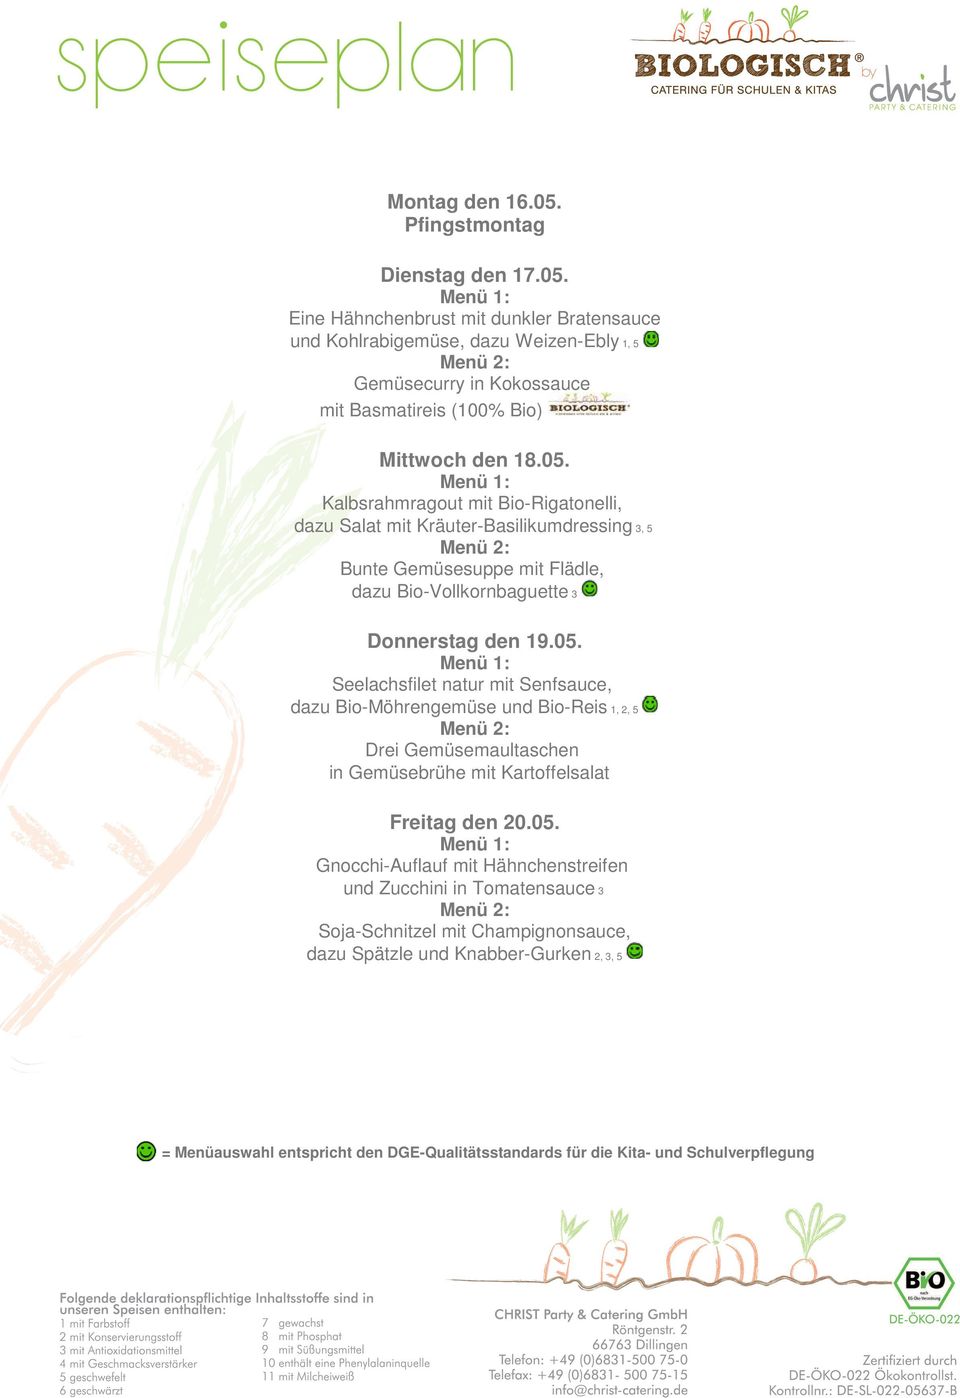 Eine Hähnchenbrust mit dunkler Bratensauce und Kohlrabigemüse, dazu Weizen-Ebly 1, 5 Gemüsecurry in Kokossauce mit Basmatireis (100% Bio) Mittwoch den 18.05.